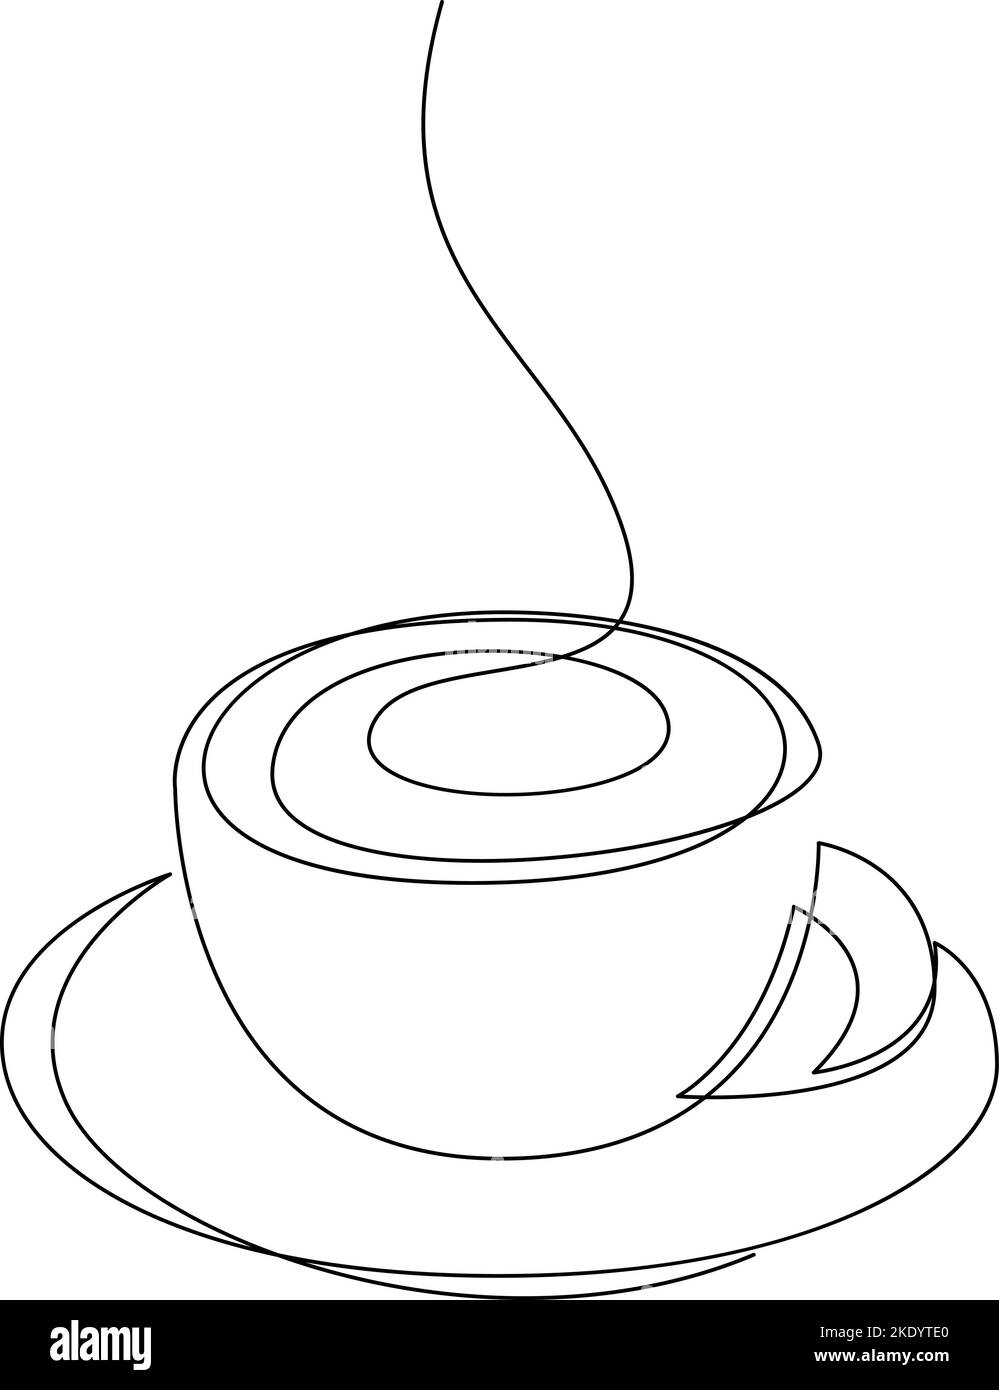 Tazza di caffè con vapore sulla piastra, disegno a linea continua Illustrazione Vettoriale